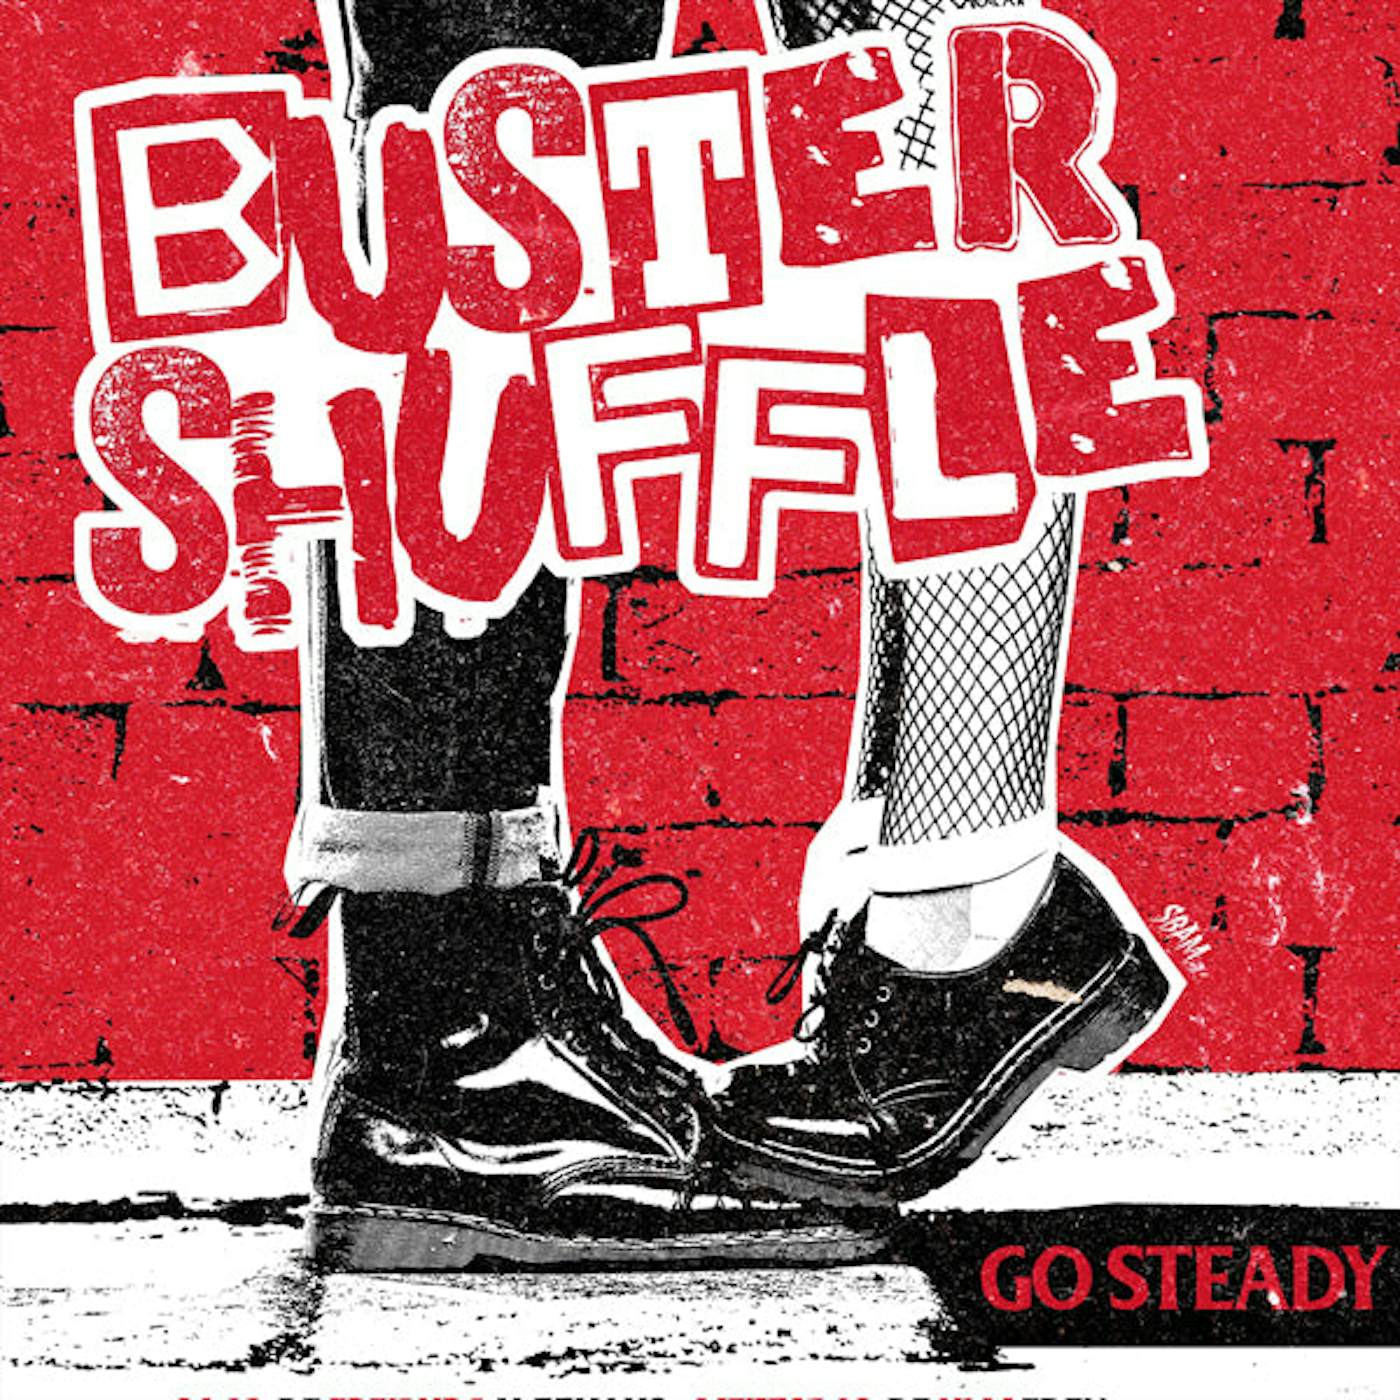 Buster Shuffle LP - Go Steady (Vinyl)